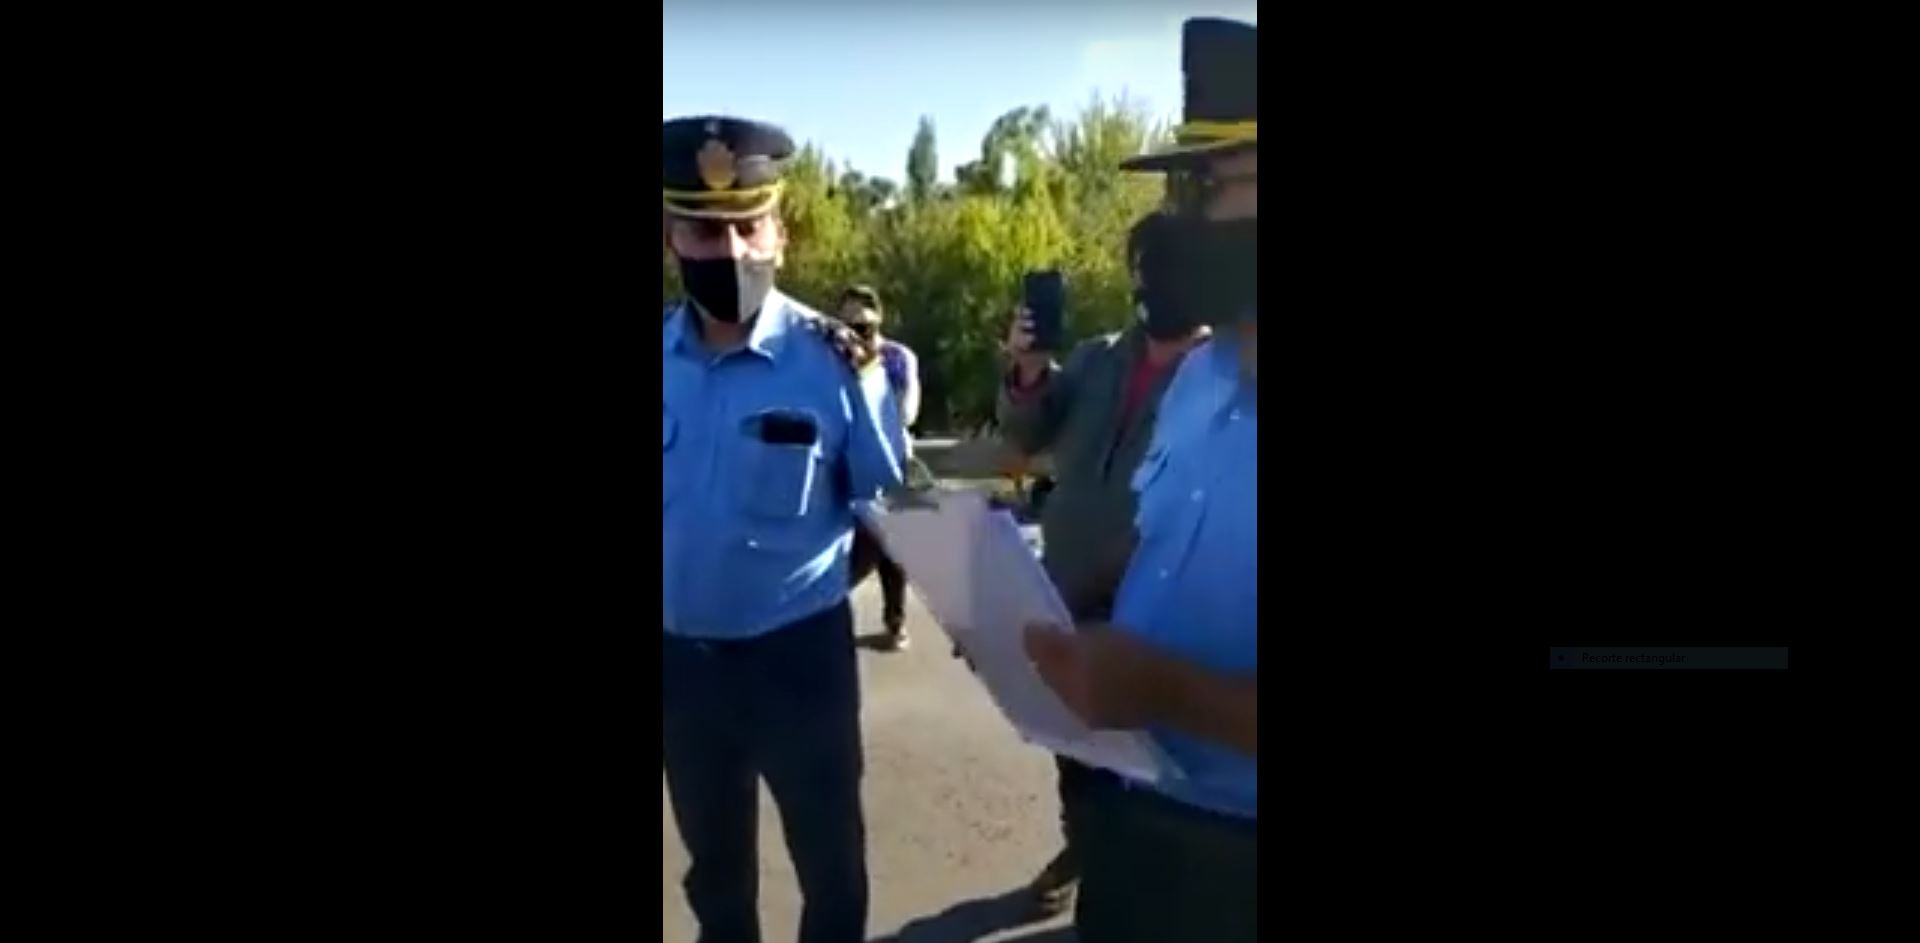 Los policías se miran entre ellos cuando evidenciaron el error de la fecha. Foto: Captura de video.